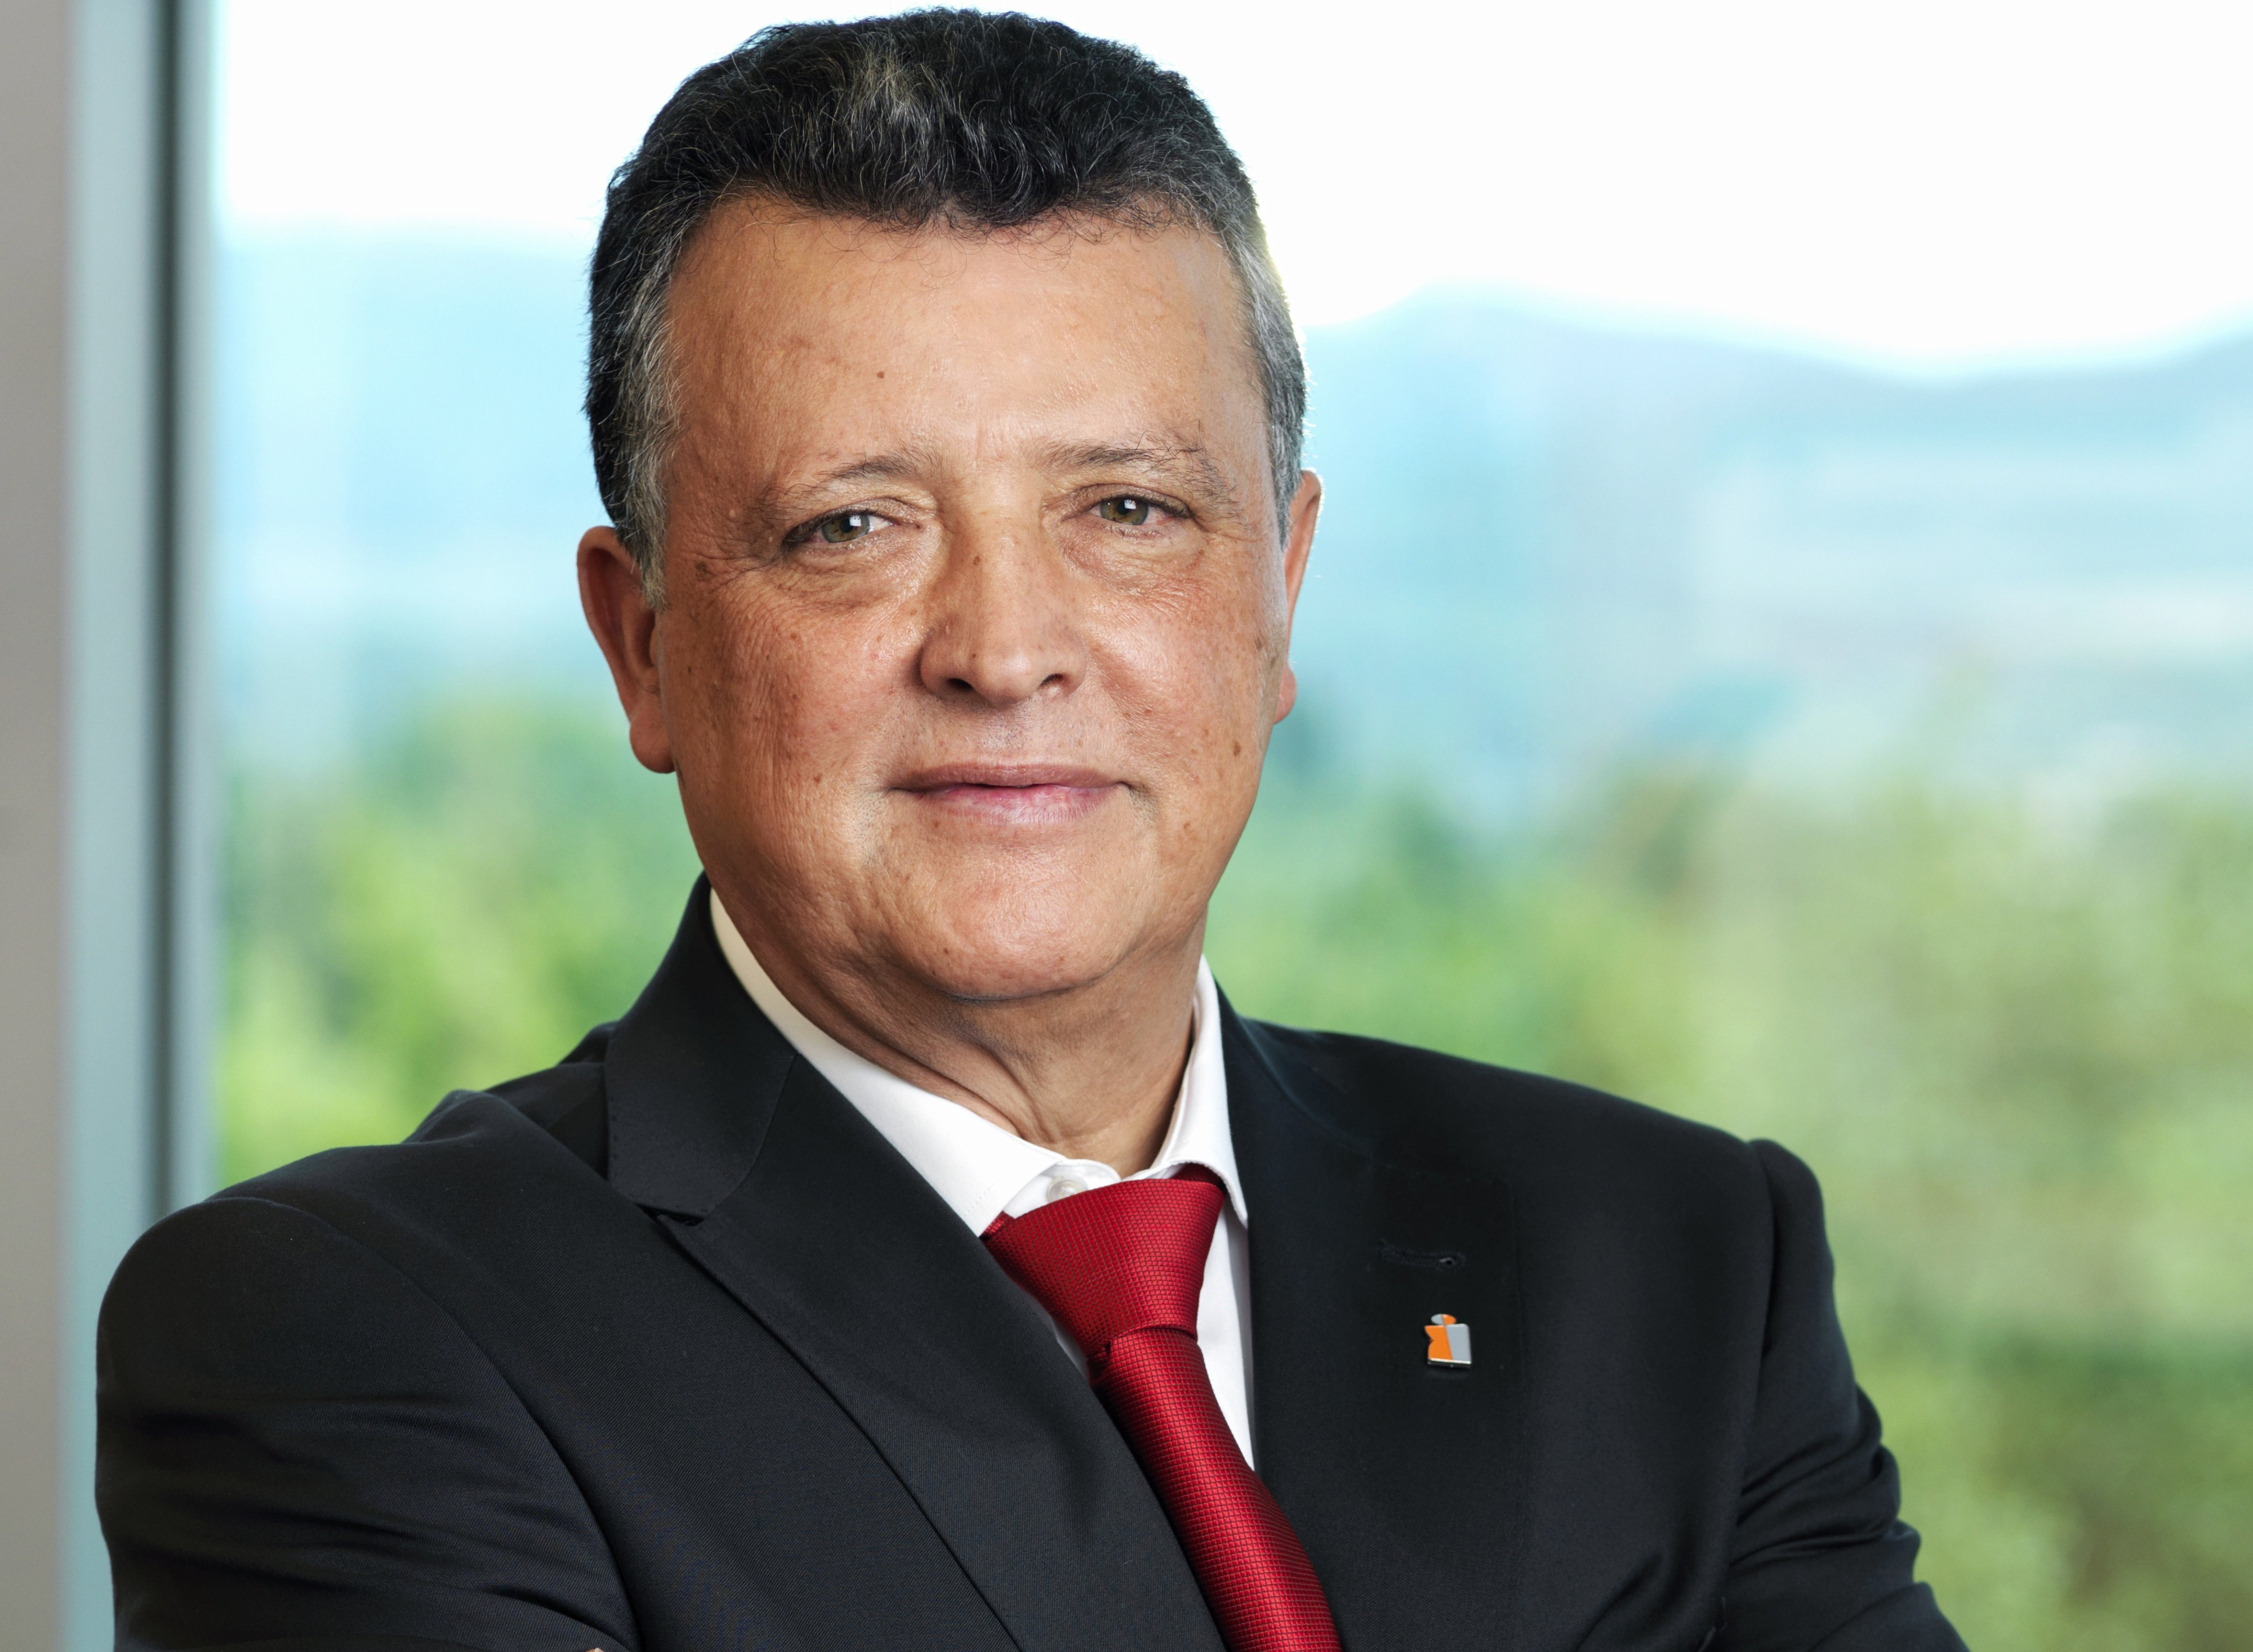 El director de la planta de Mercedes de Vitoria, Emilio Titos / Mercedes